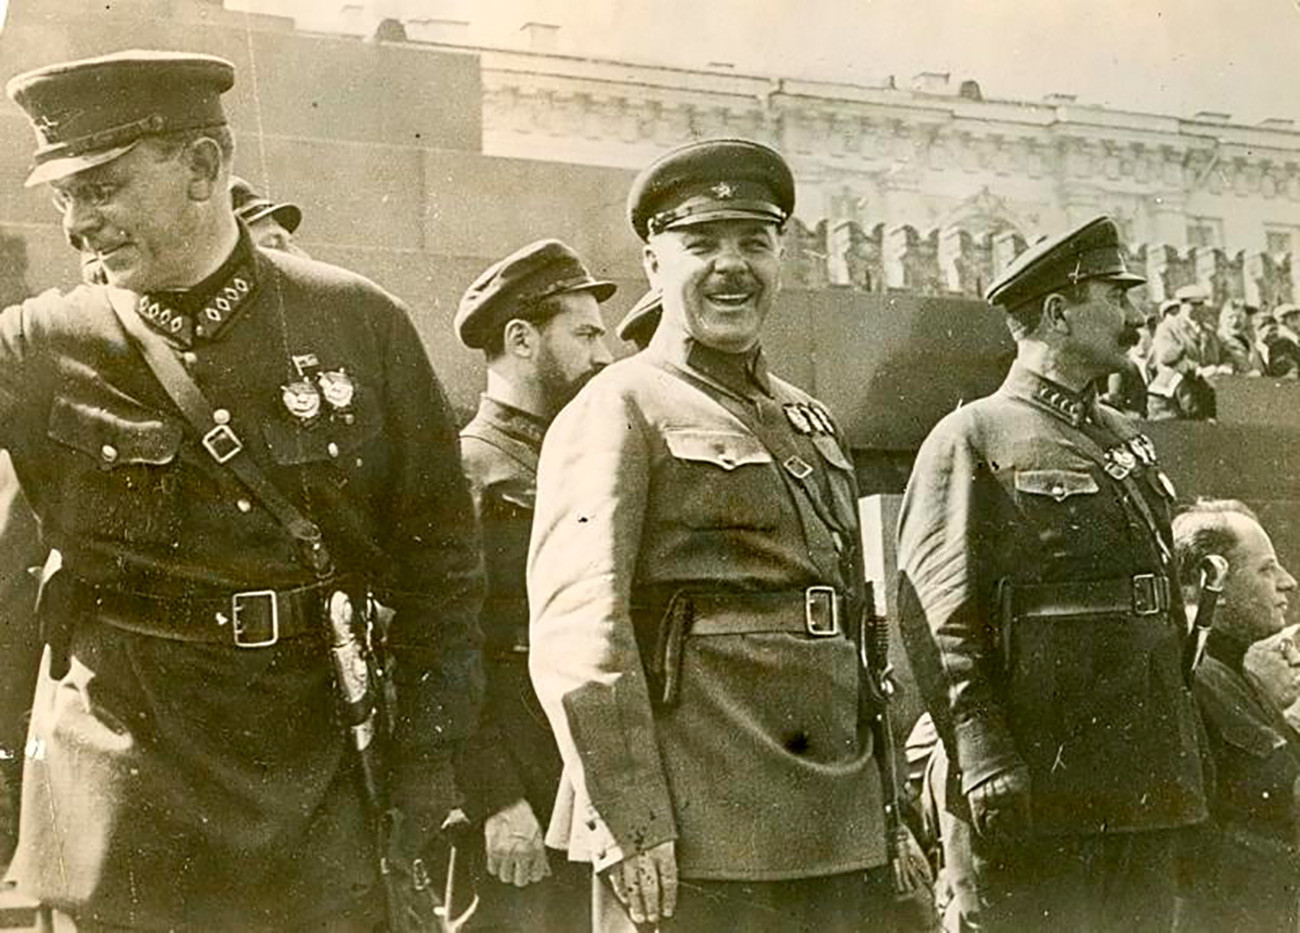 Comandantes do Exército Vermelho August Kork, Ian Gamarnik, Kliment Vorochilov, Semion Budiónni ao lado do Mausoléu de Lênin.